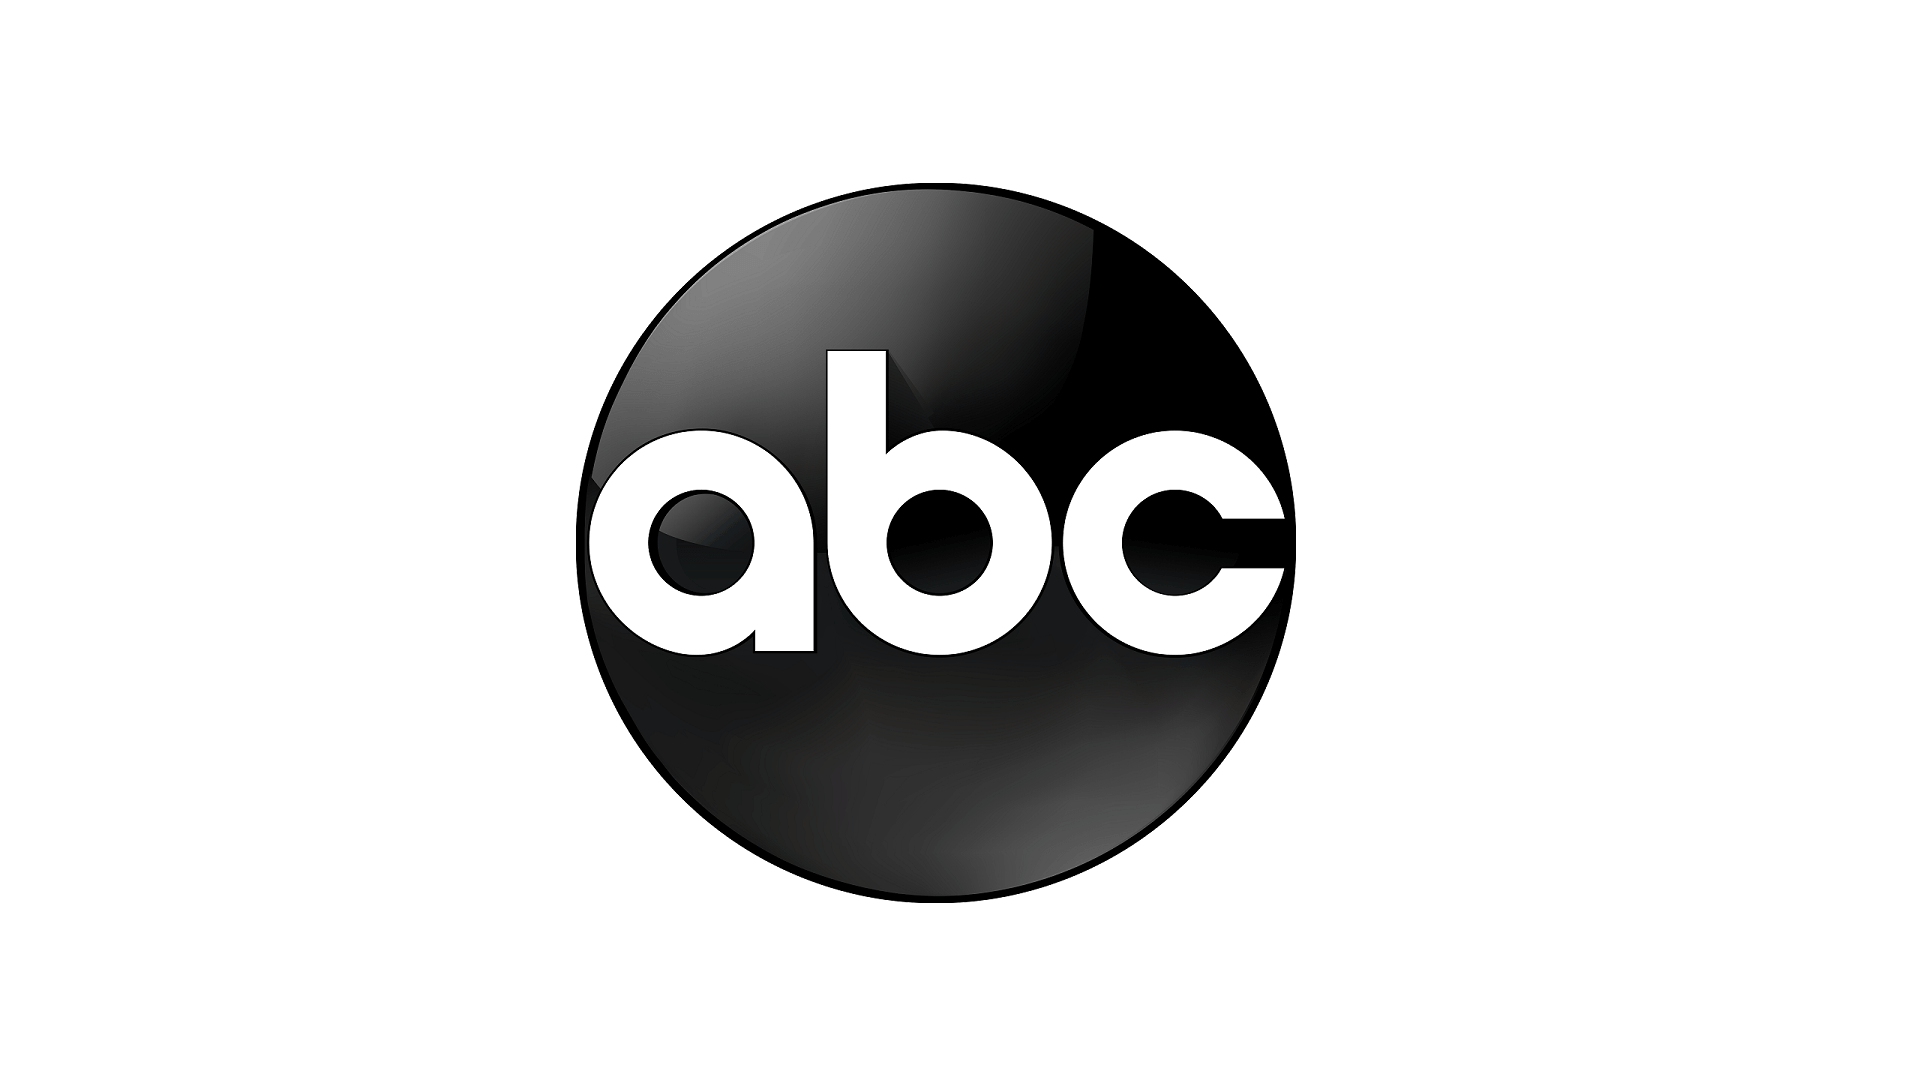 Abcnews.go.com Logo - ABC – Media Kit